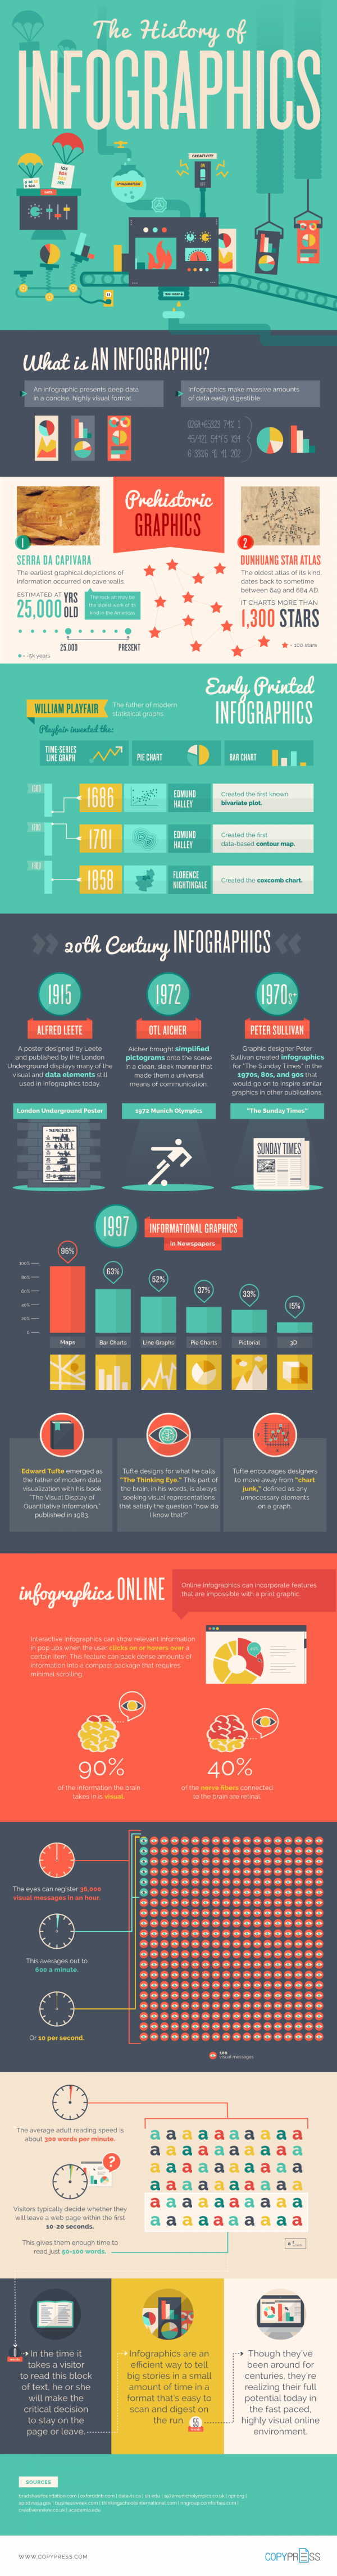 Povijest infografika Screenshot/Copypress